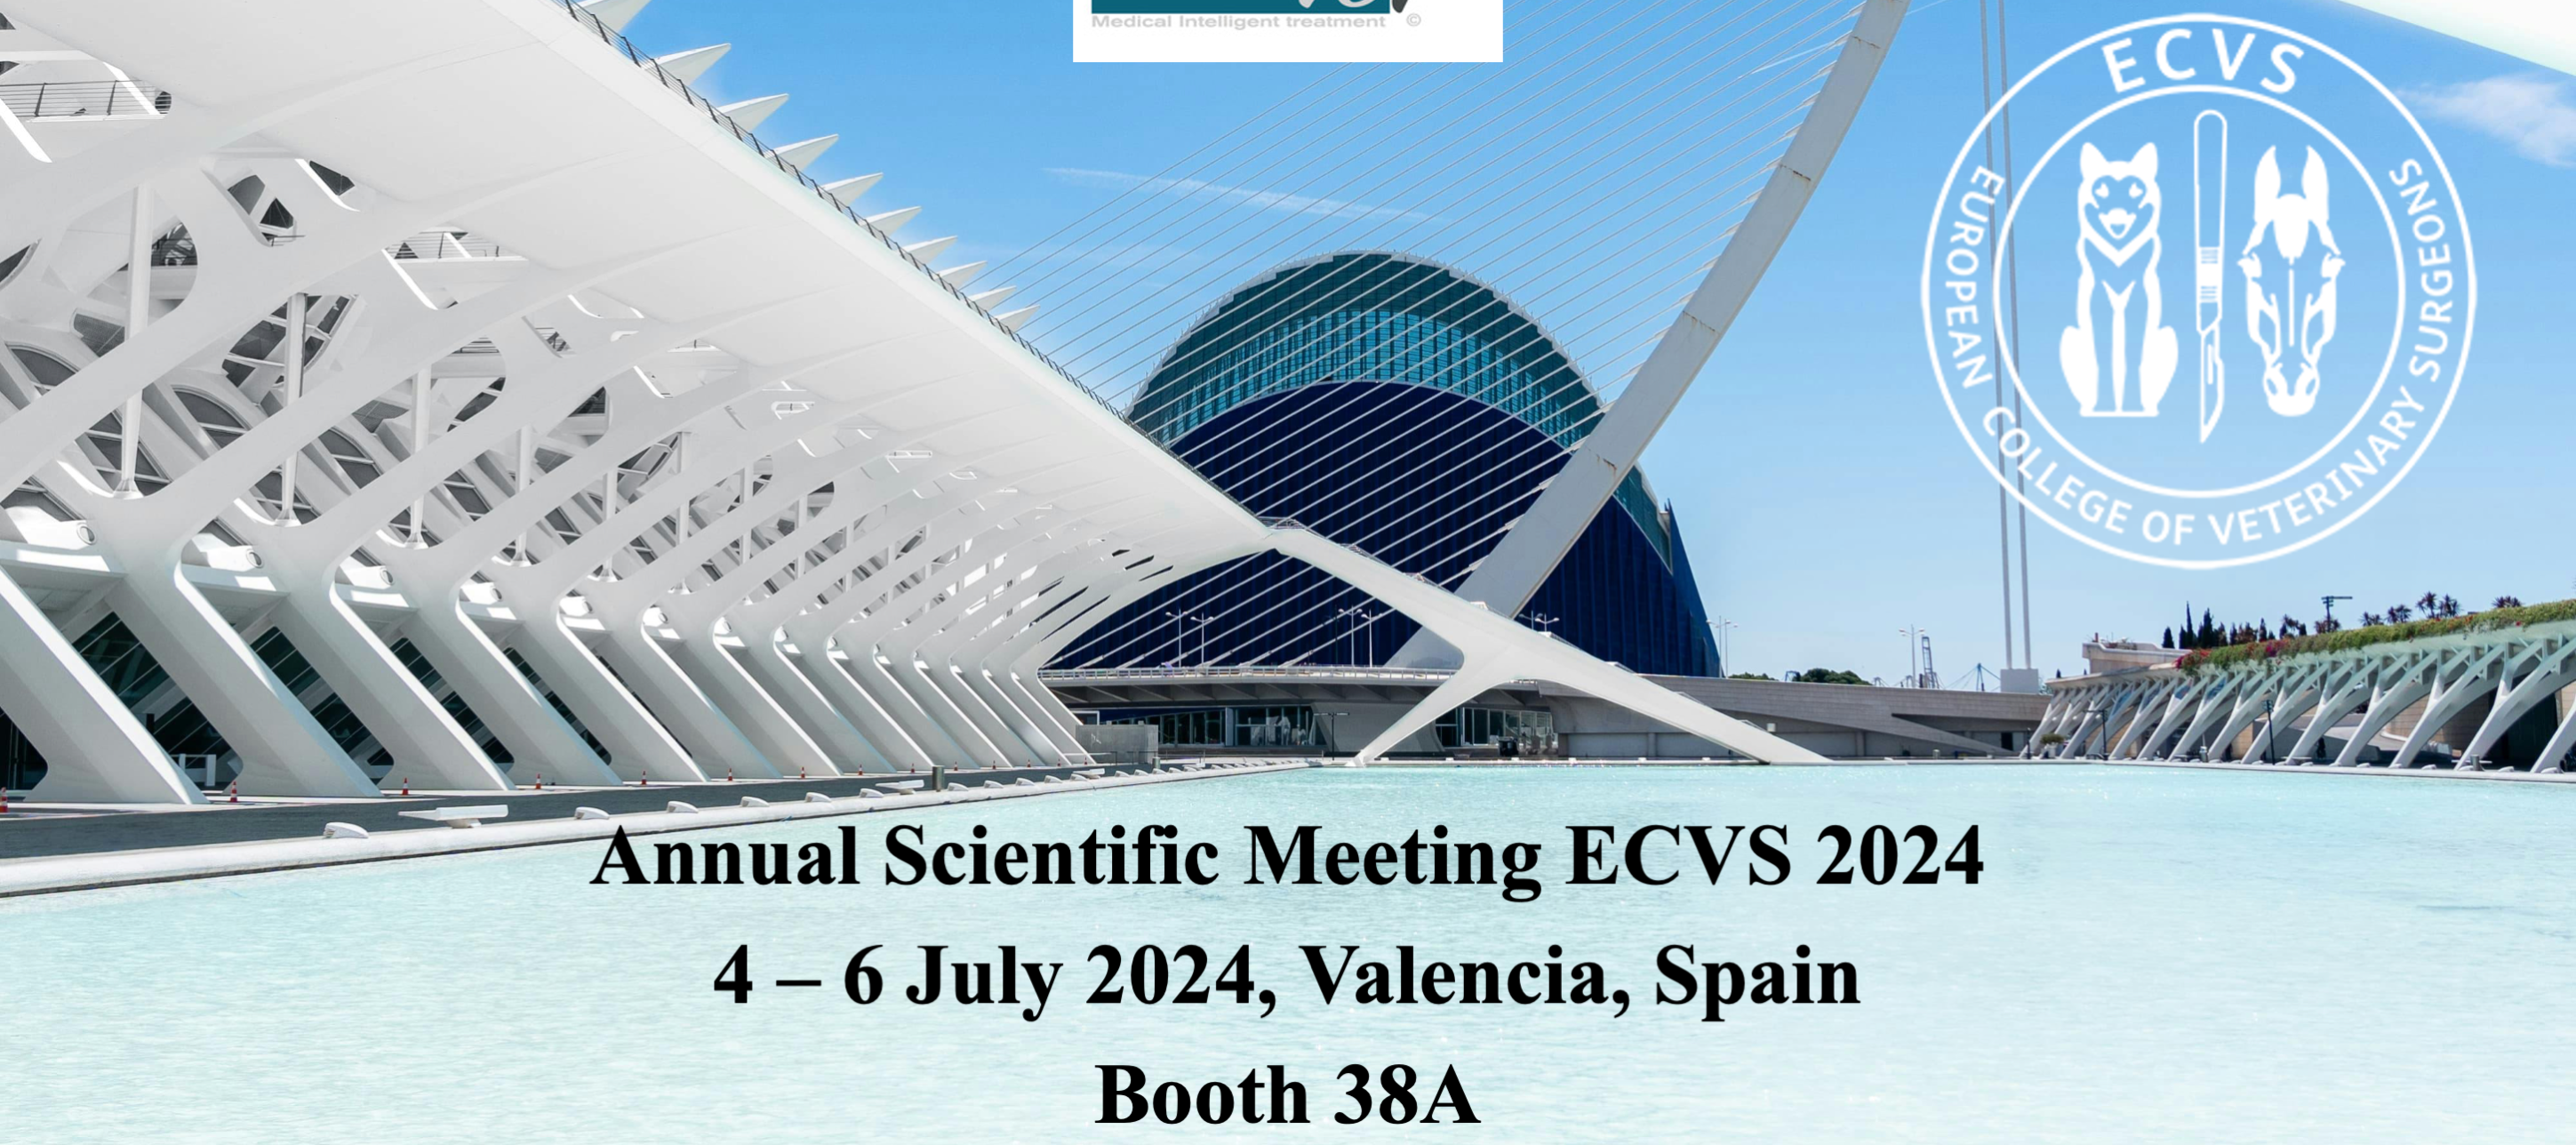 Deuxième participation au congrès ECVS - 2024 Valencia